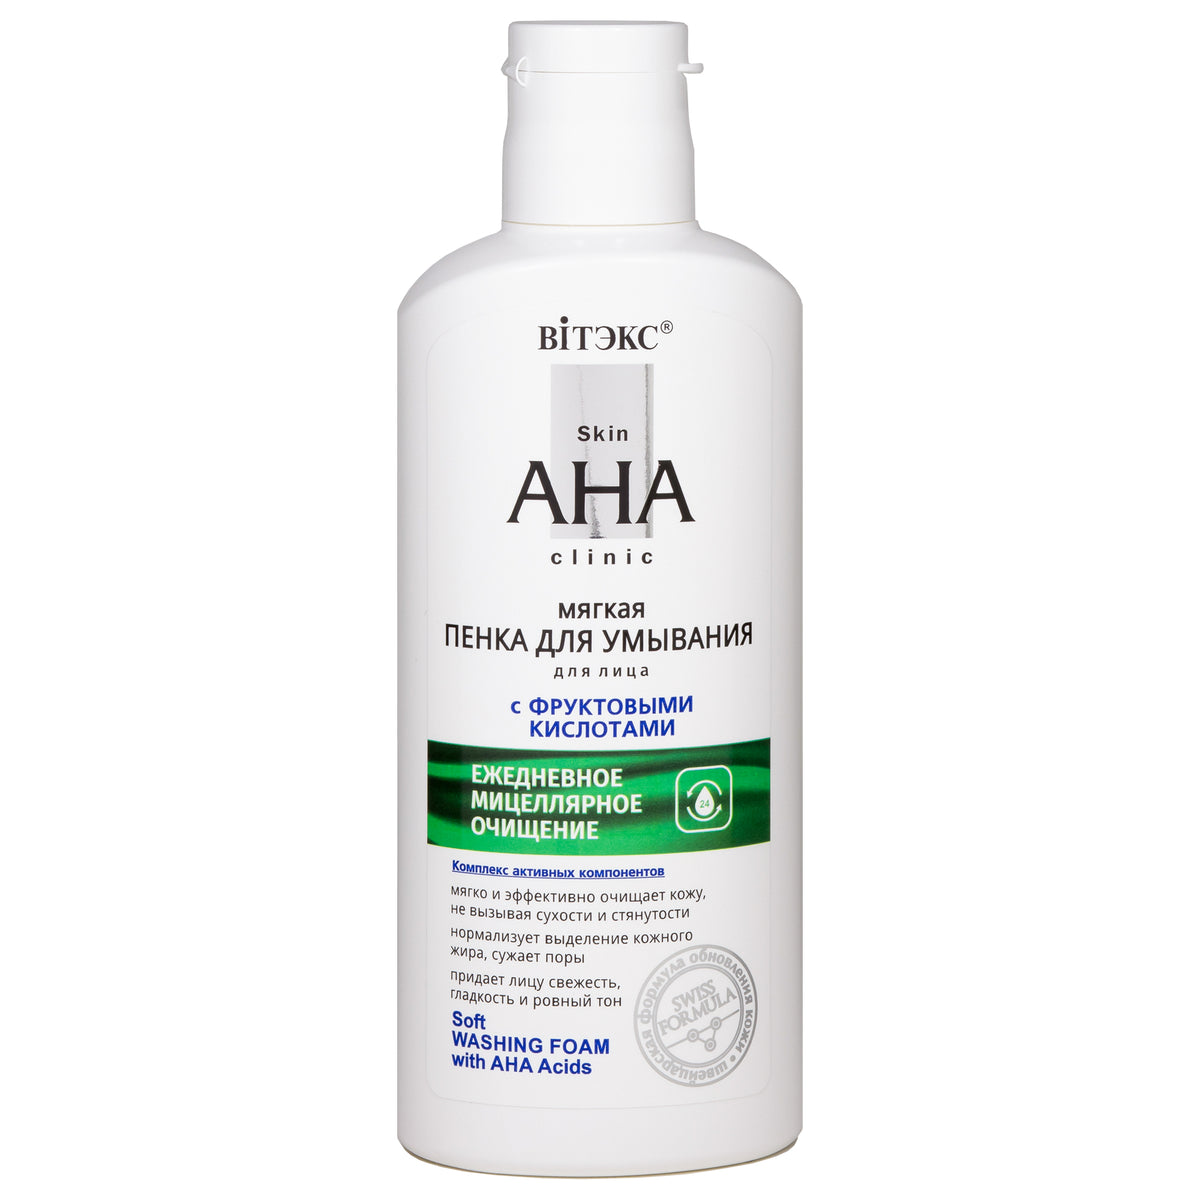 Skin AHA Clinic AHA Asitleri İçeren Hassas Temizlik Yüz Yıkama Köpüğü | Auraline Cosmetics